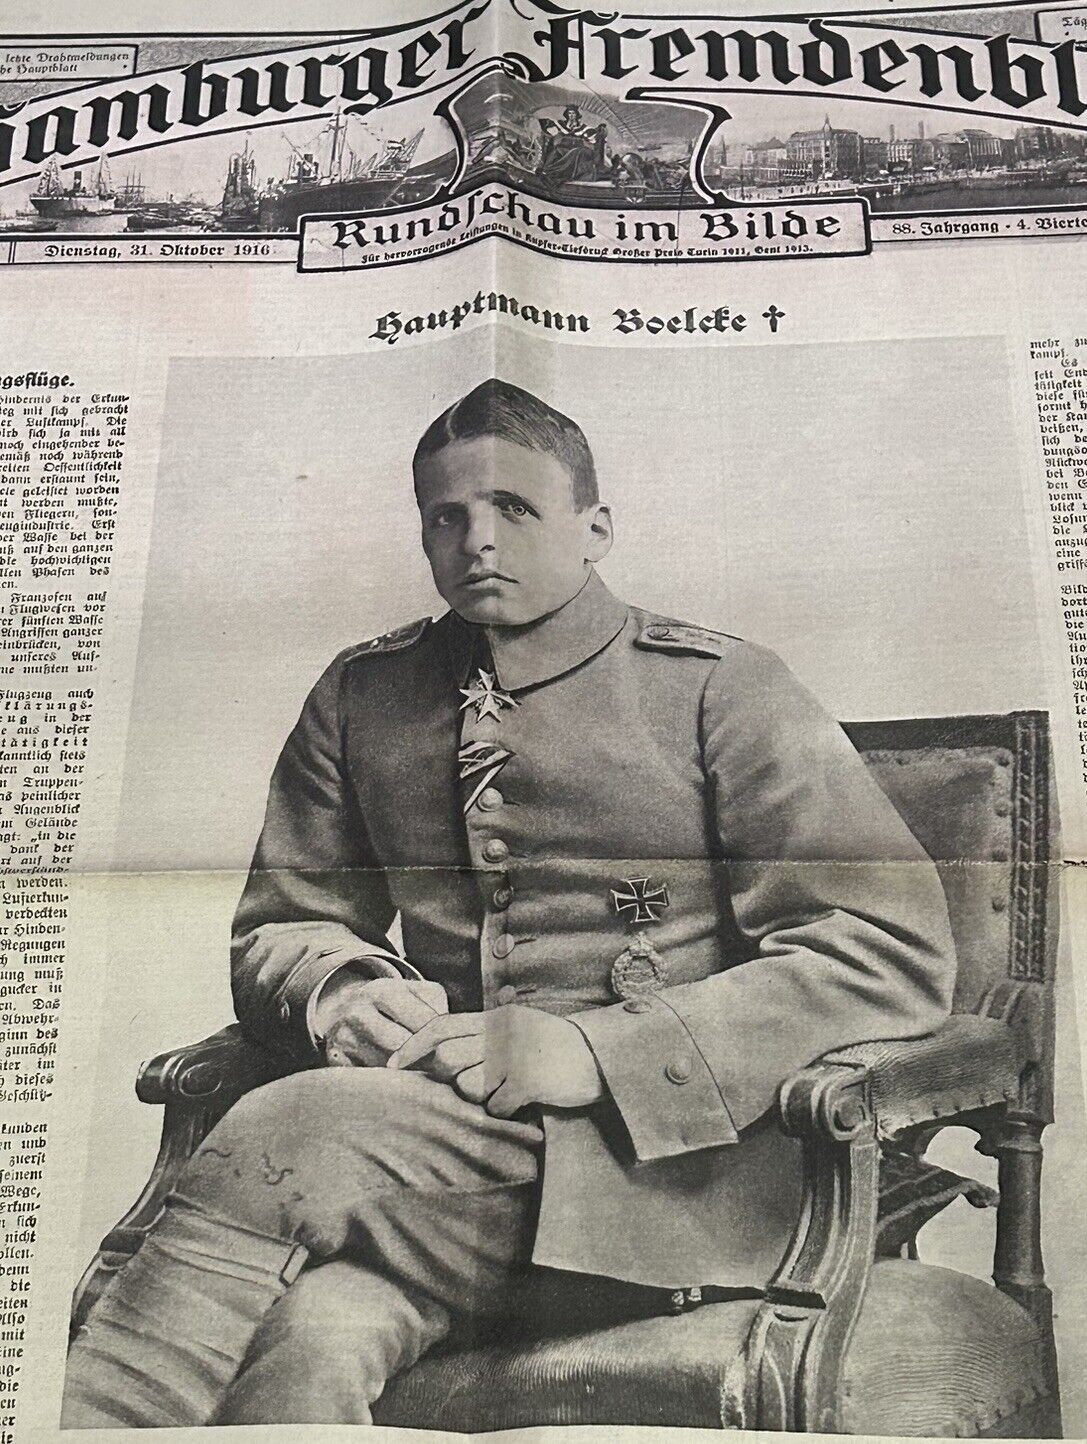 WW1 German Paper 31 Oct. 1916 - Flieger Hptm. Oswald Boelcke KIA 28 Oct. 1916